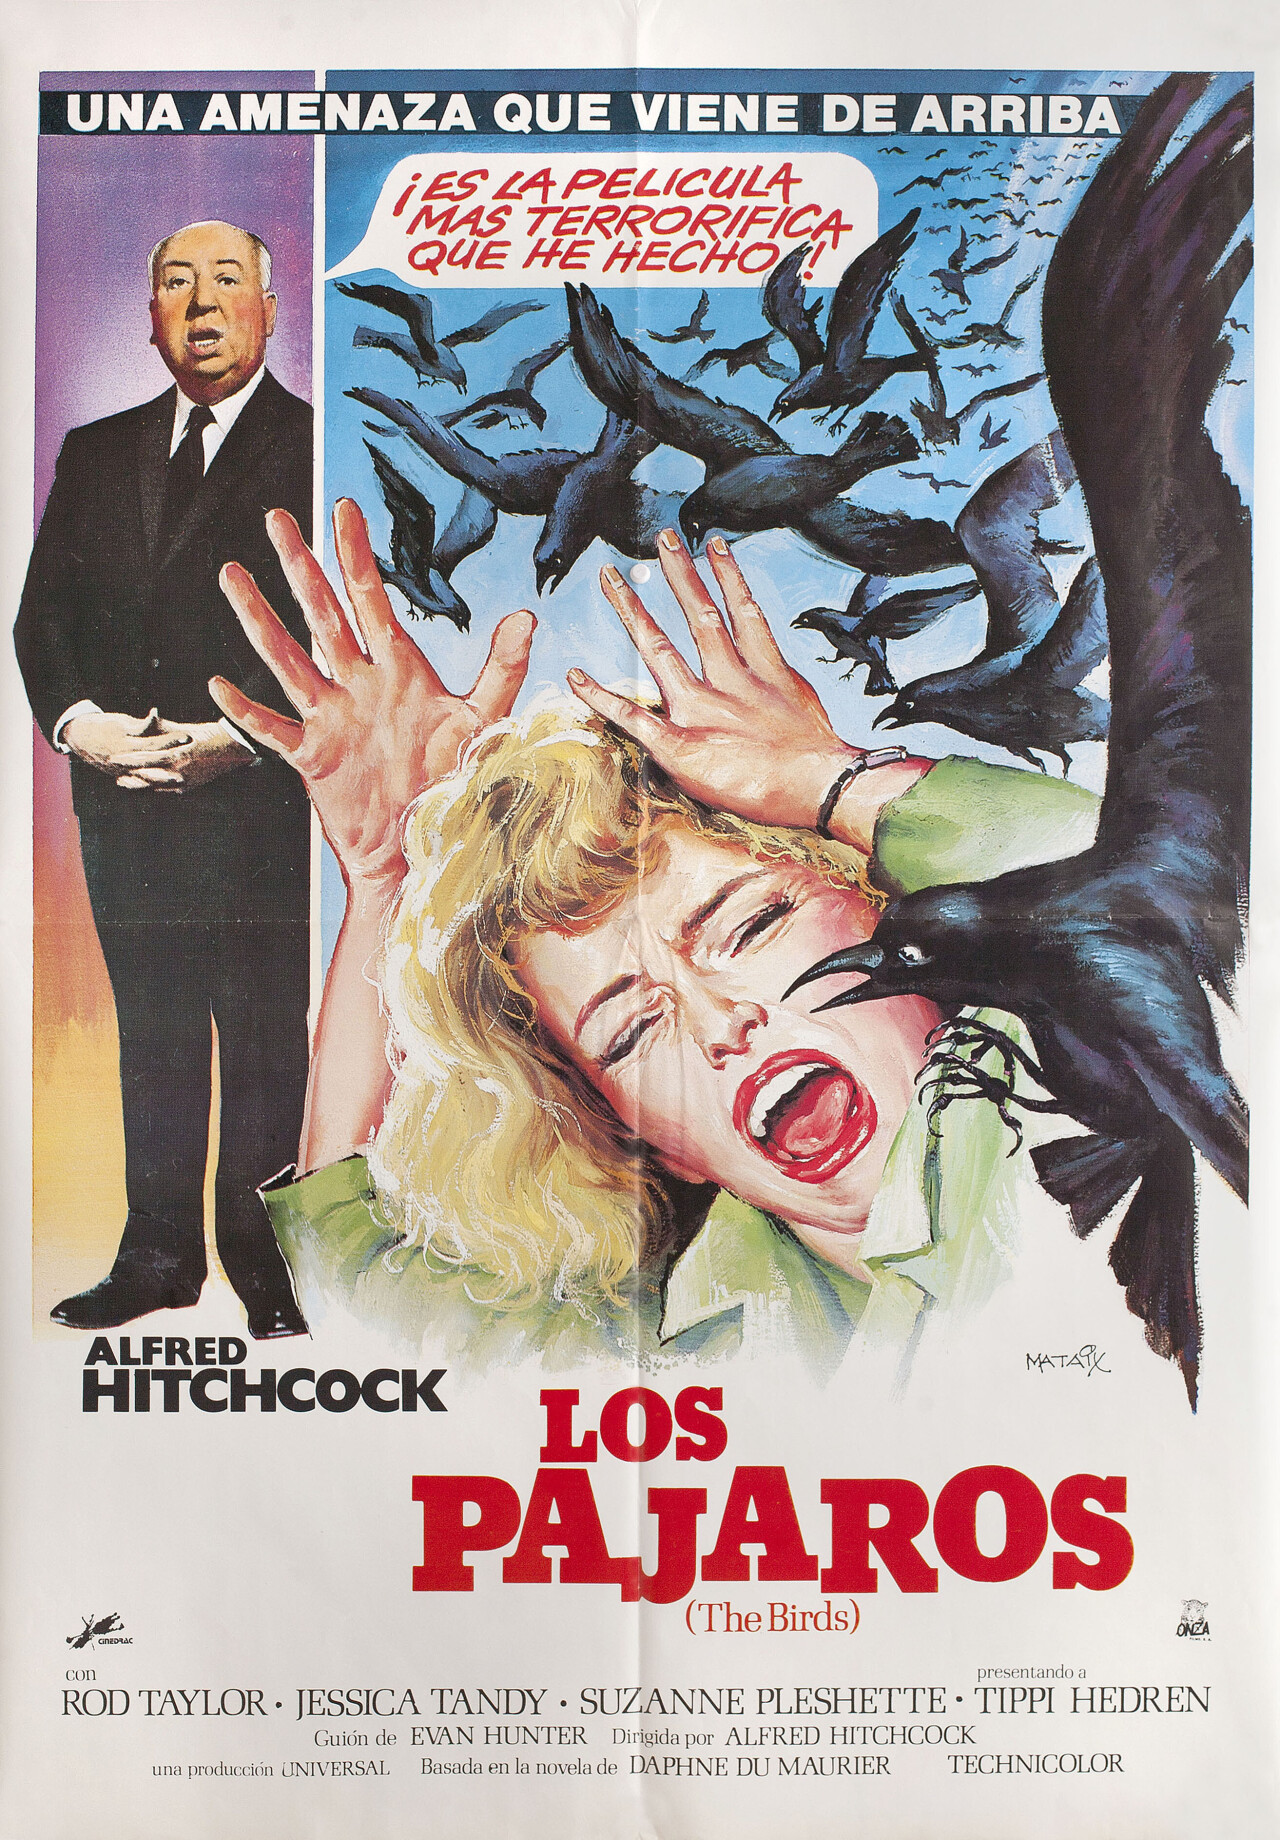 Птицы (The Birds, 1963), режиссёр Альфред Хичкок, испанский постер к фильму, автор Матэ (ужасы, 1984 год)